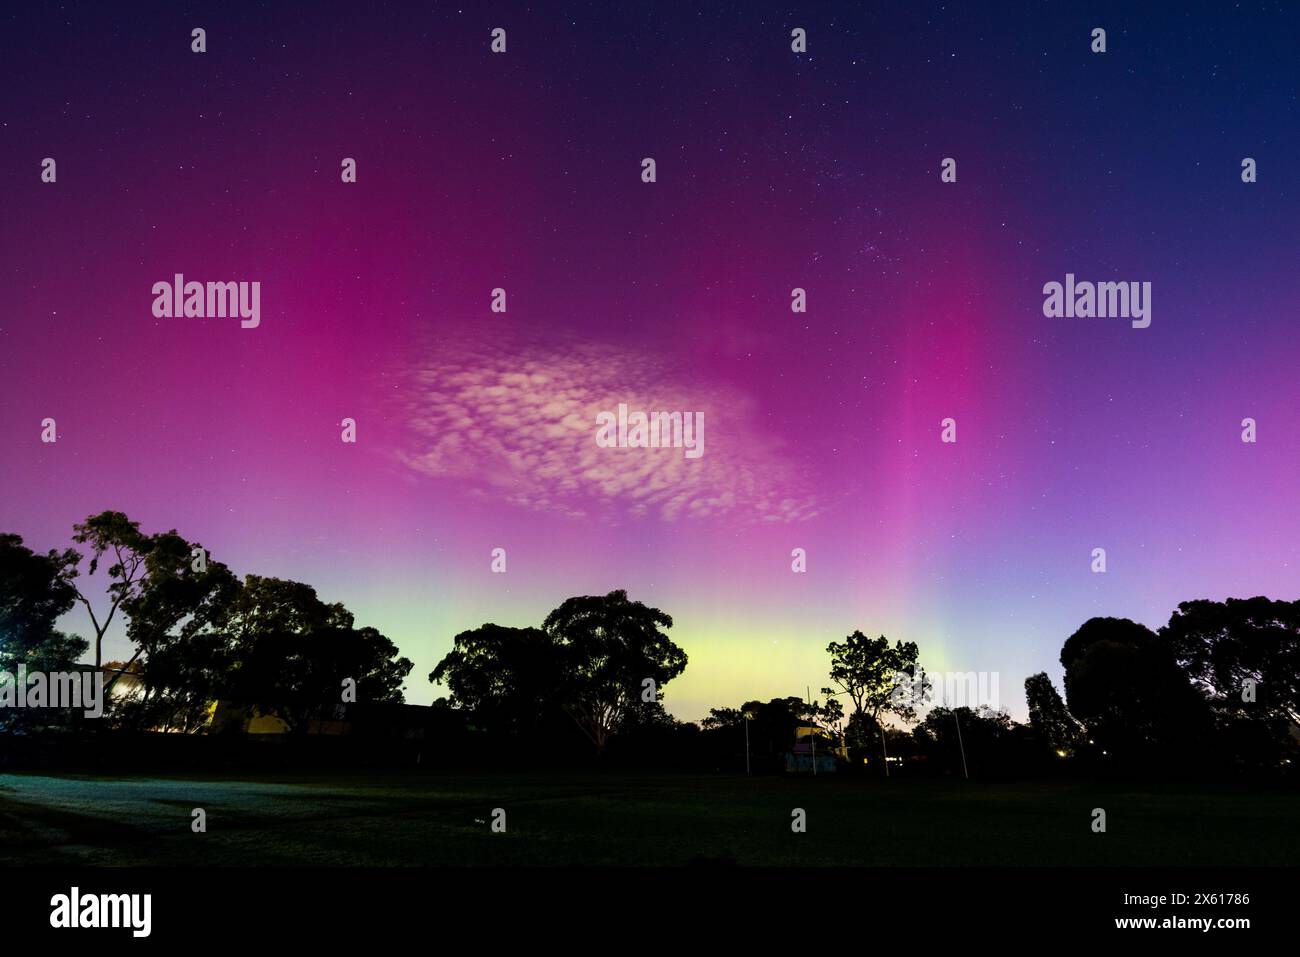 MELBOURNE, AUSTRALIA - 12 MAGGIO: L'aumento dell'attività solare determina la presenza della rara Aurora Australis nelle aree meridionali dell'Australia. Questa immagine Foto Stock